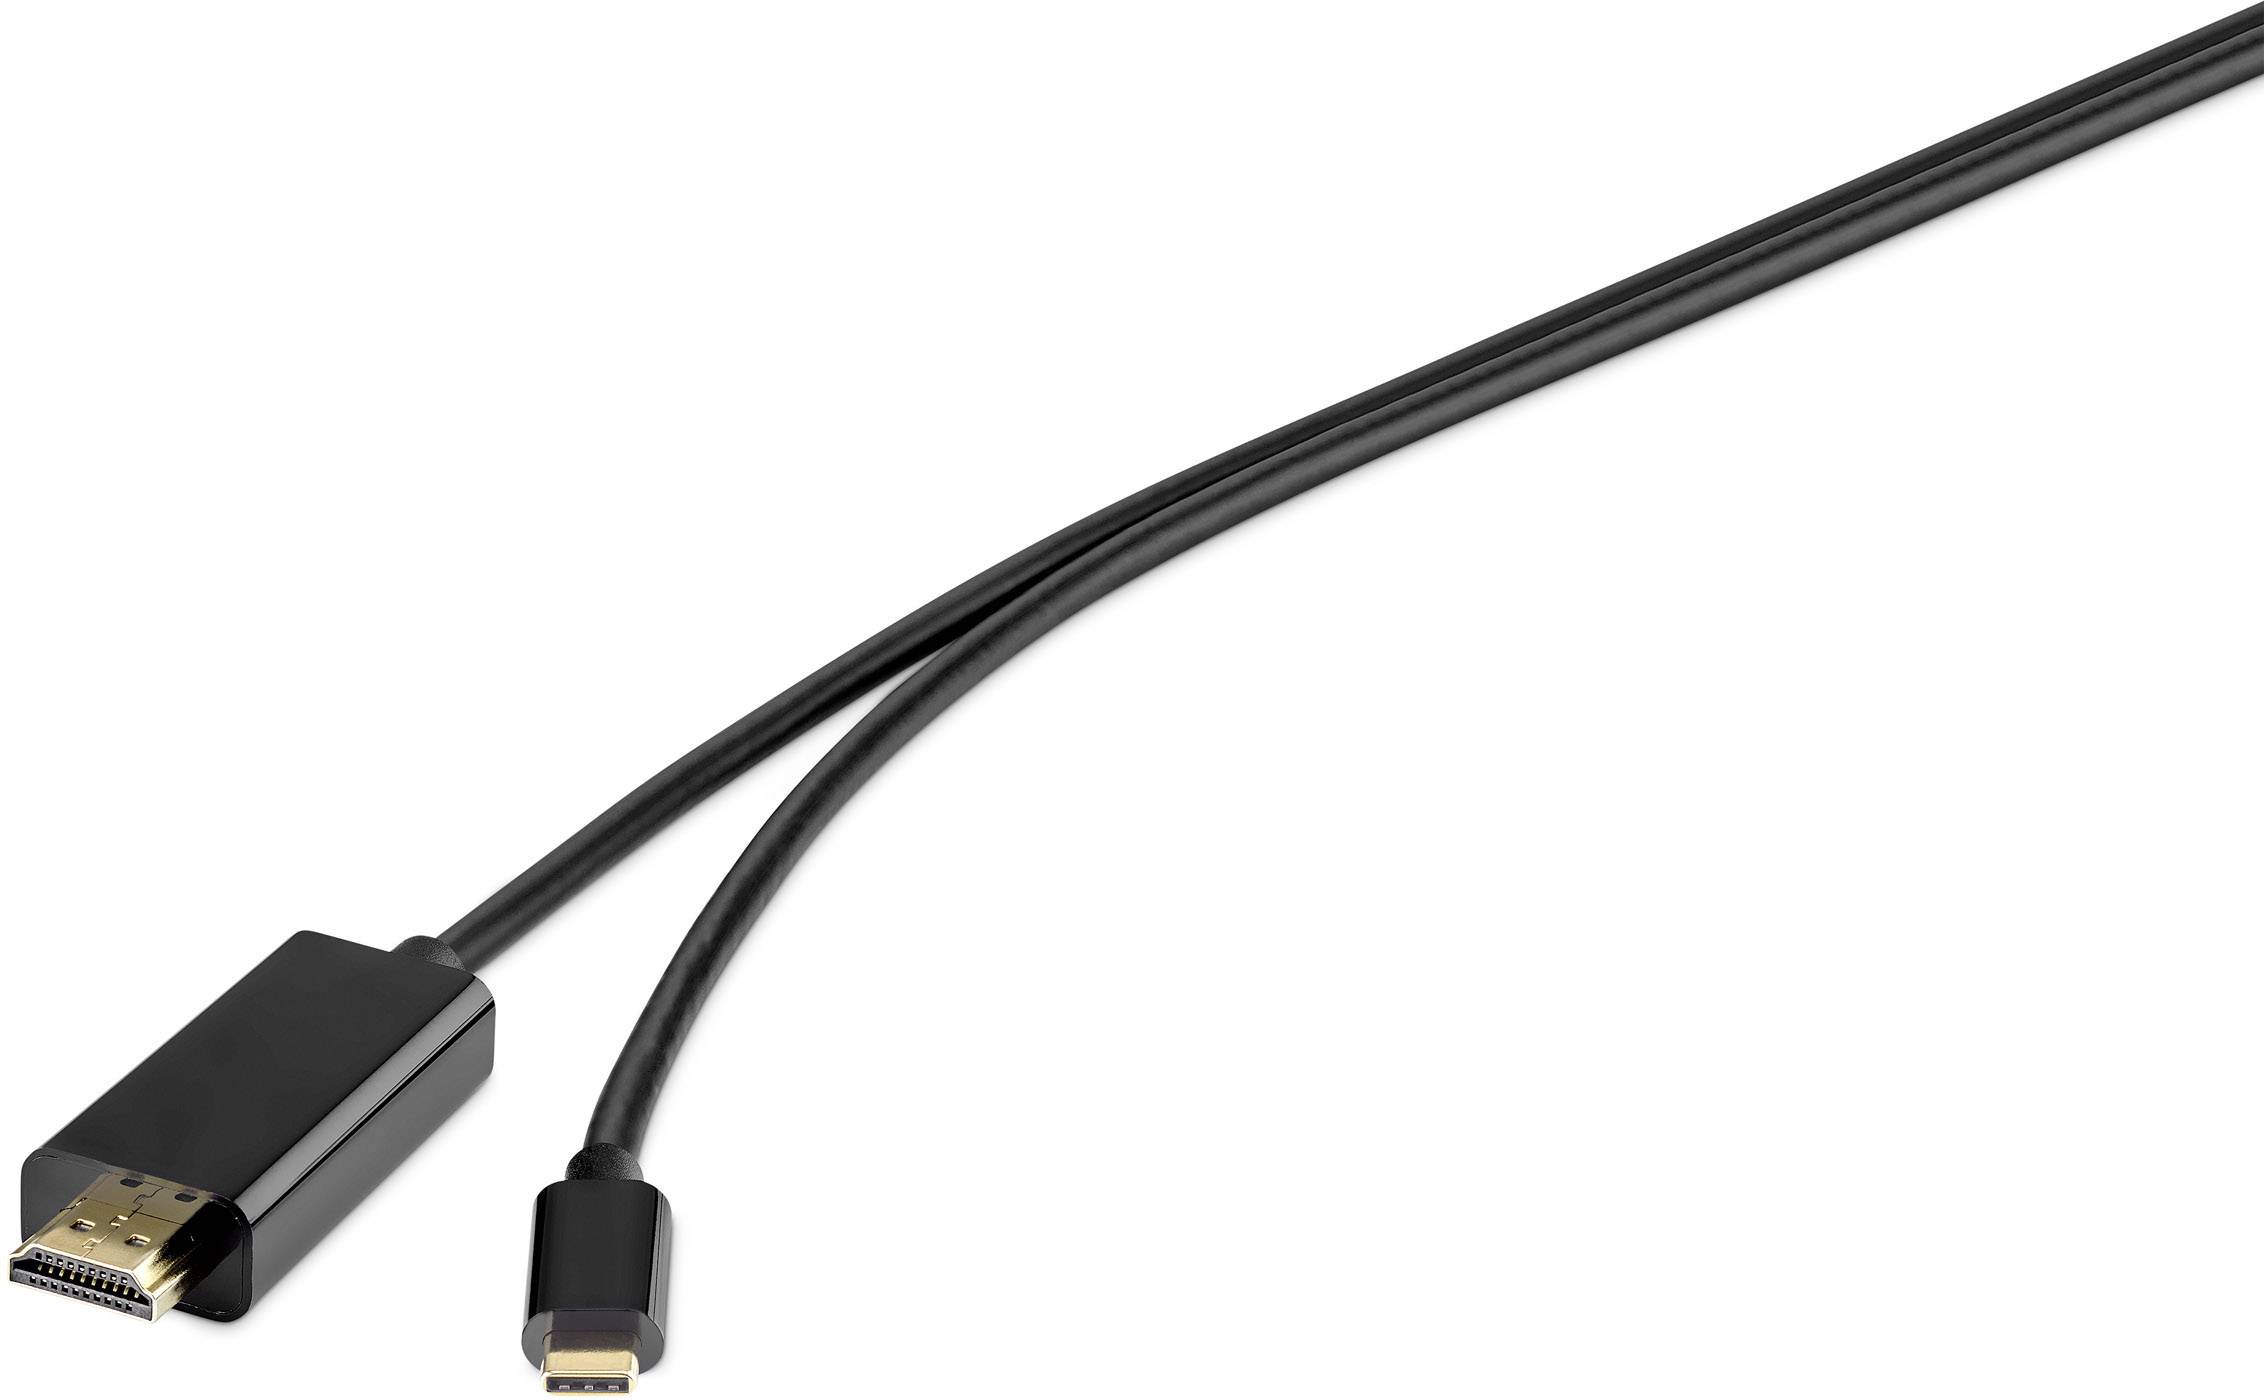 CONRAD Renkforce USB / HDMI Anschlusskabel 1.80 m Schwarz [1x USB-C? Stecker - 1x HDMI-Stecker]